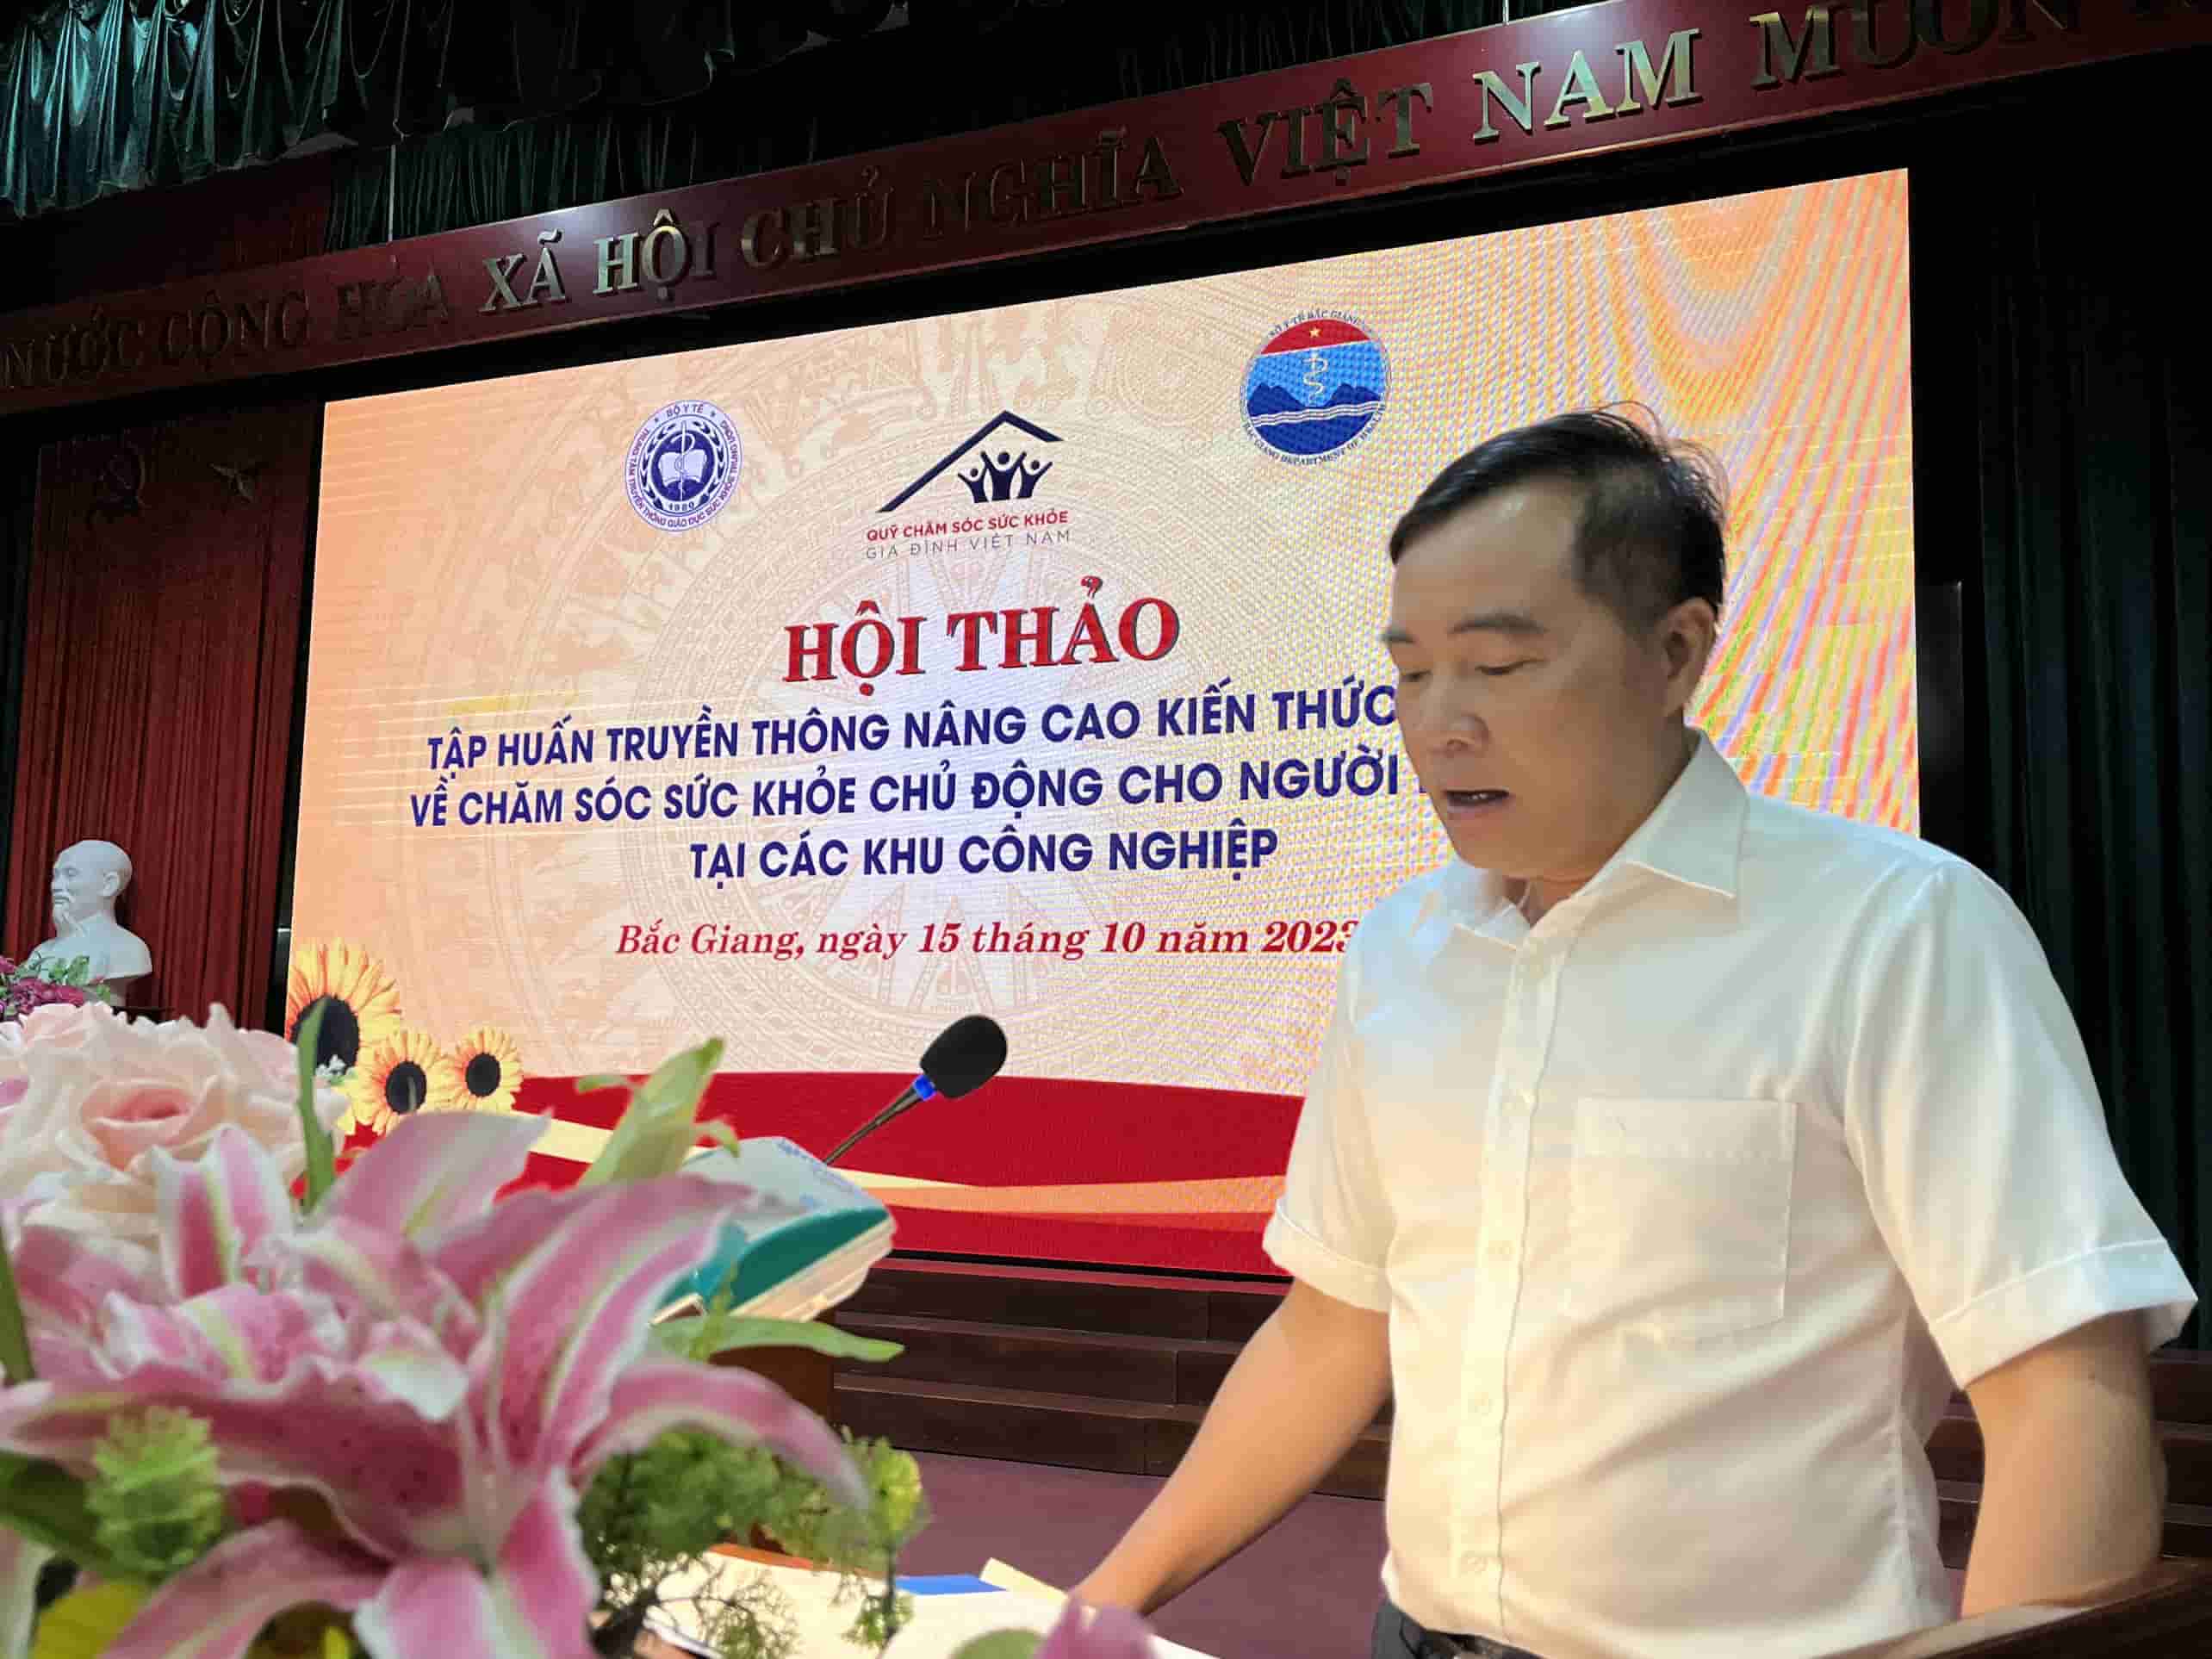  Ông Từ Quốc Hiệu - Phó Giám đốc Sở Y tế tỉnh Bắc Giang tế phát biểu tại hội thảo. Ảnh: Vân Trang  